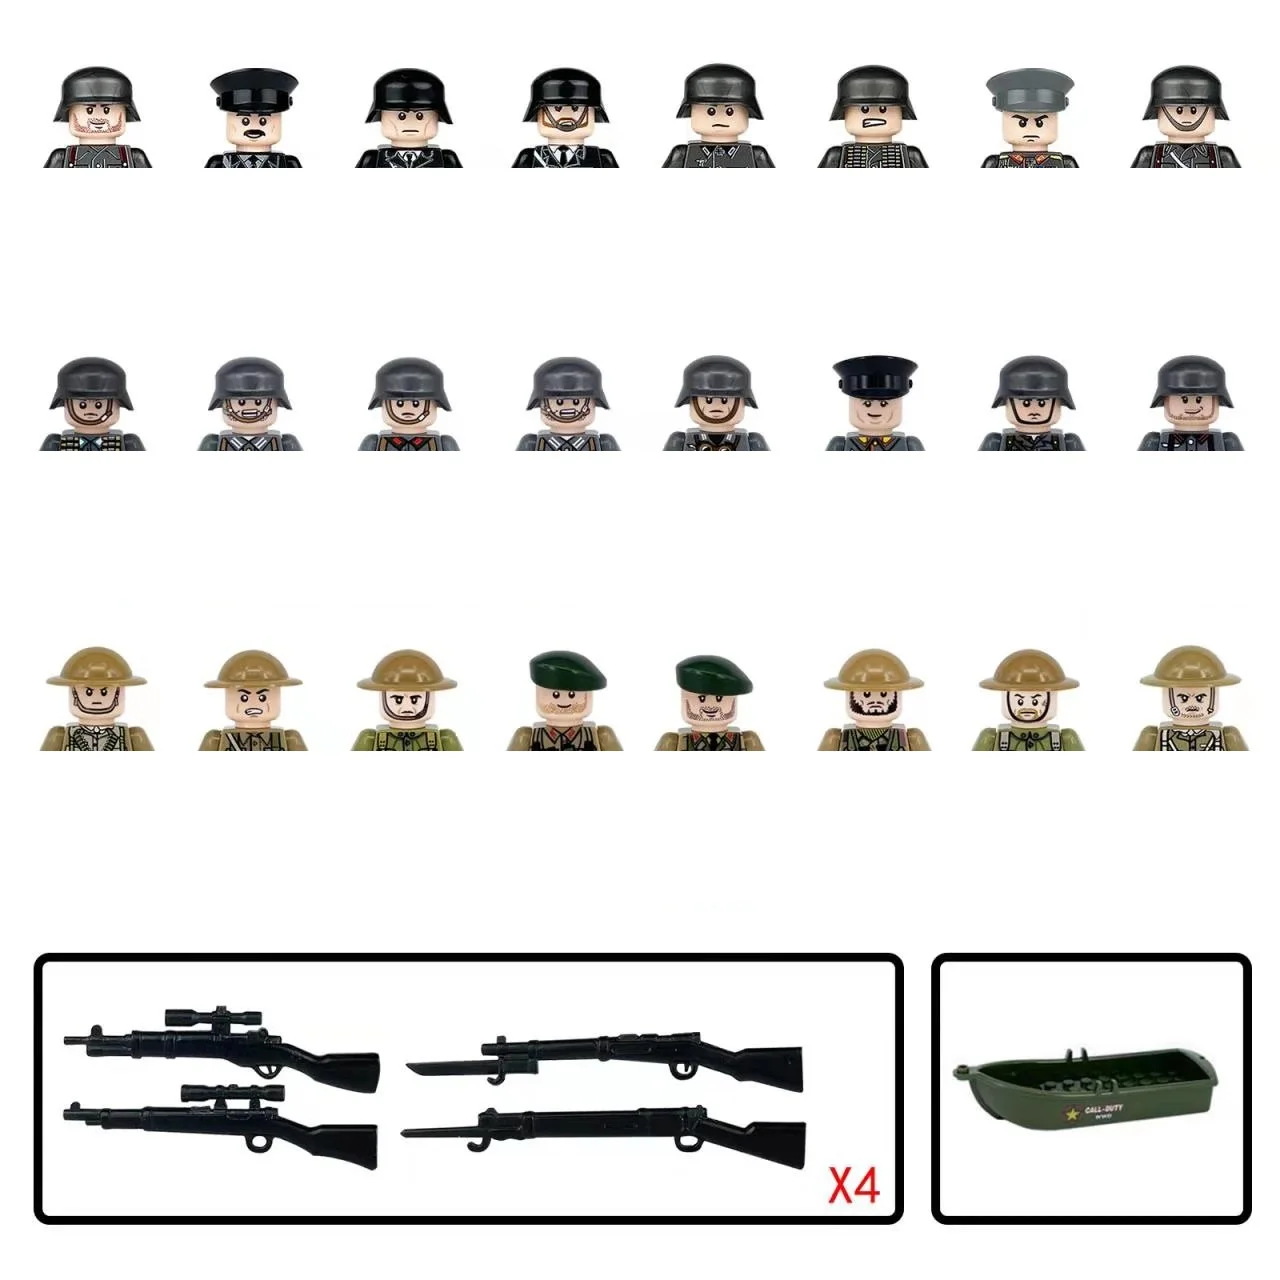 

Конструктор Военный, 2 мировая война, Германия, британская армия, пехота, солдаты, Минифигурки, оружие, винтовка, пистолет, корабль, кирпичи, игрушки для детей